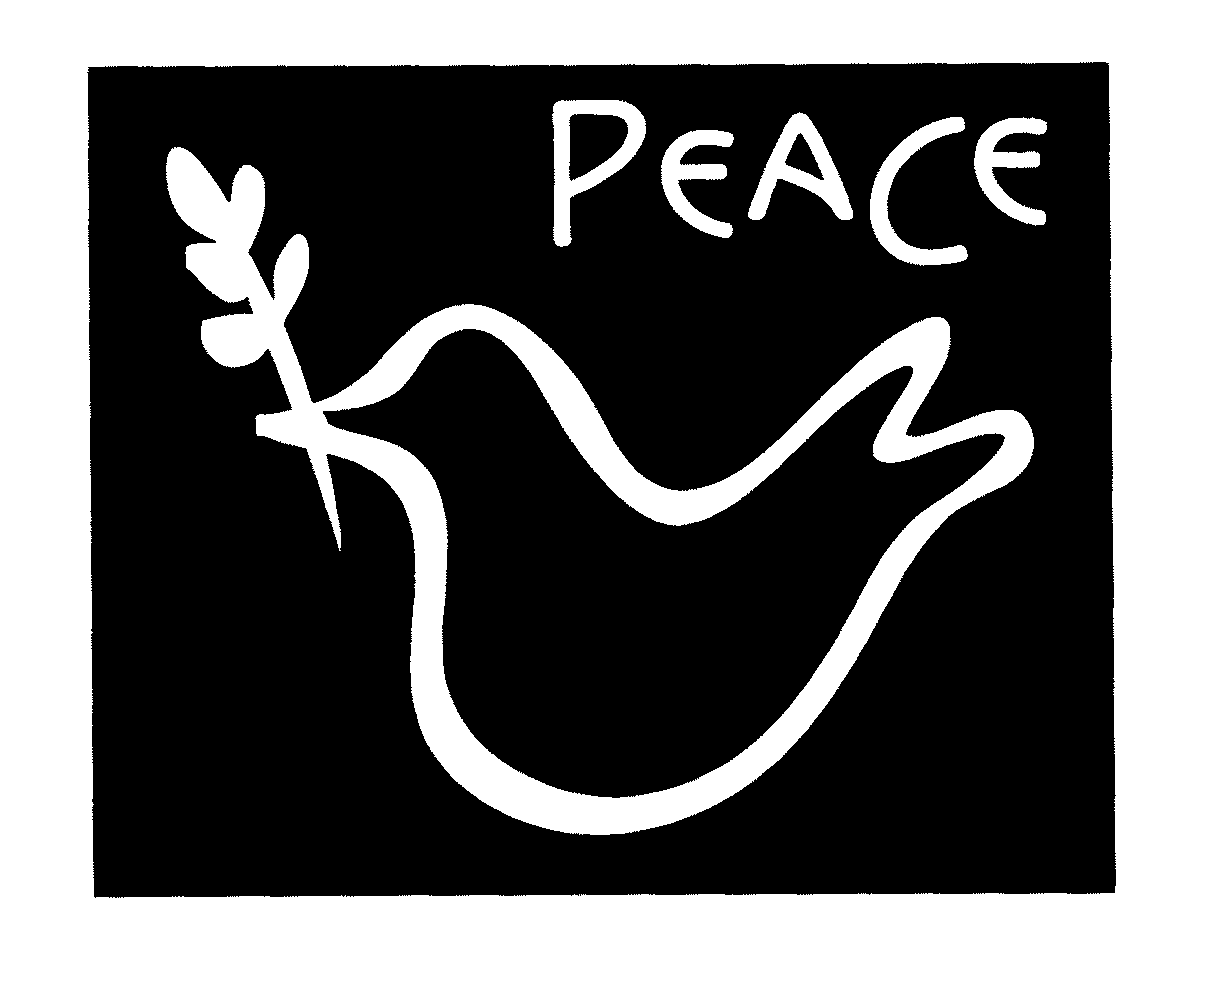  PEACE